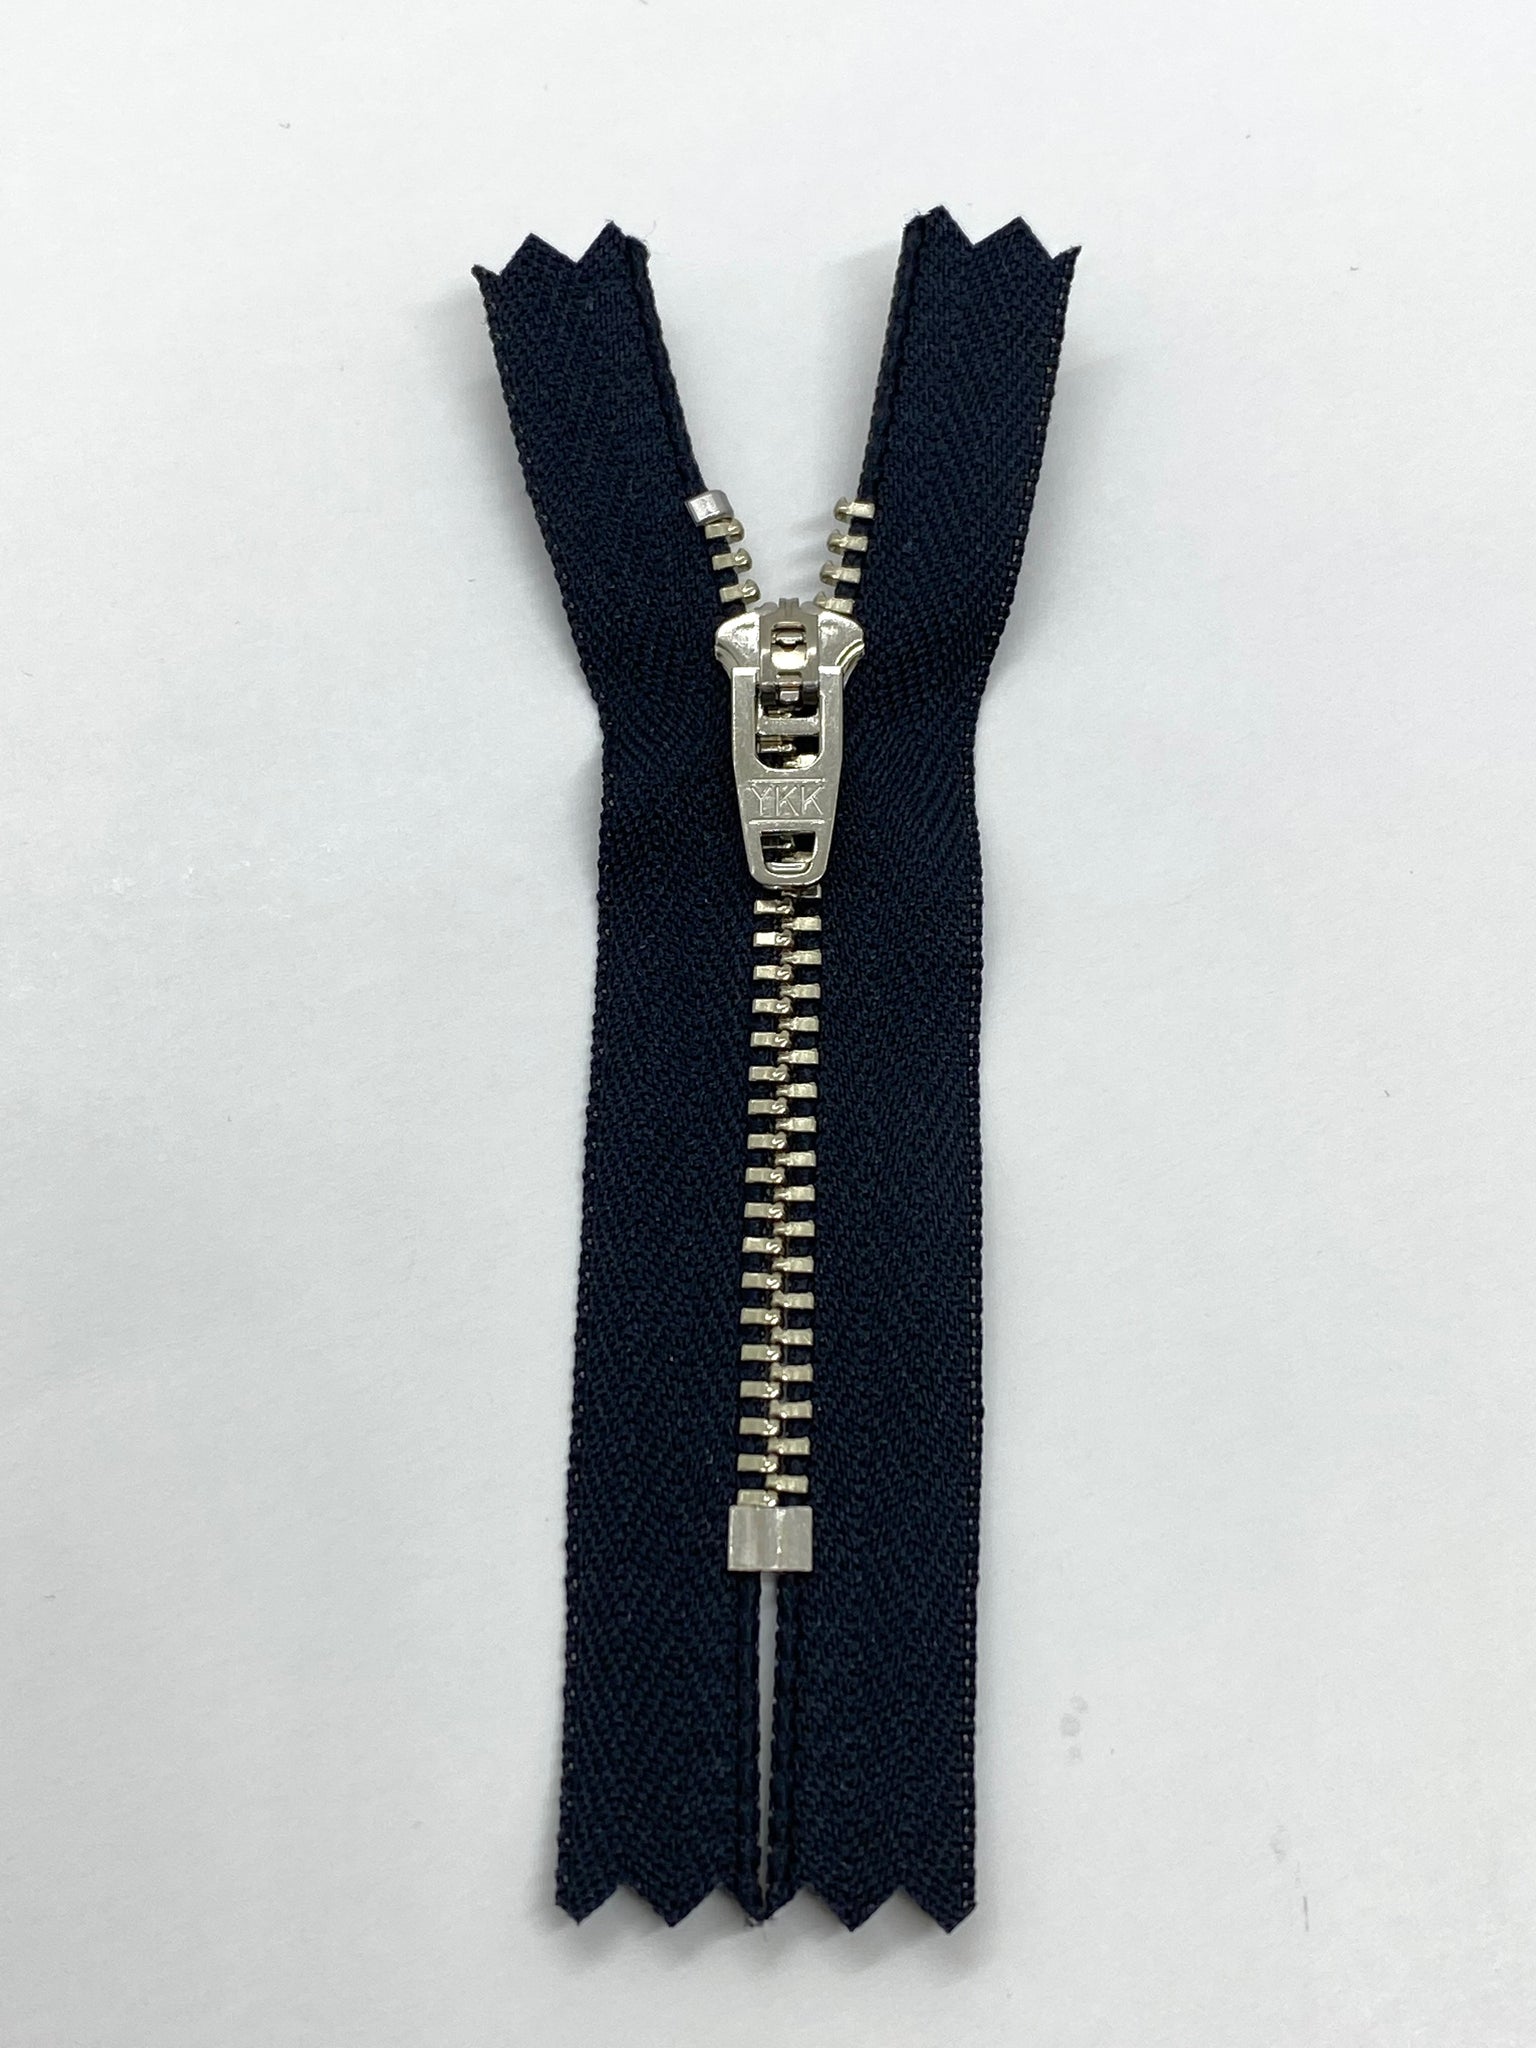 Metal YKK zipper two-way – Silver/Black ribbon